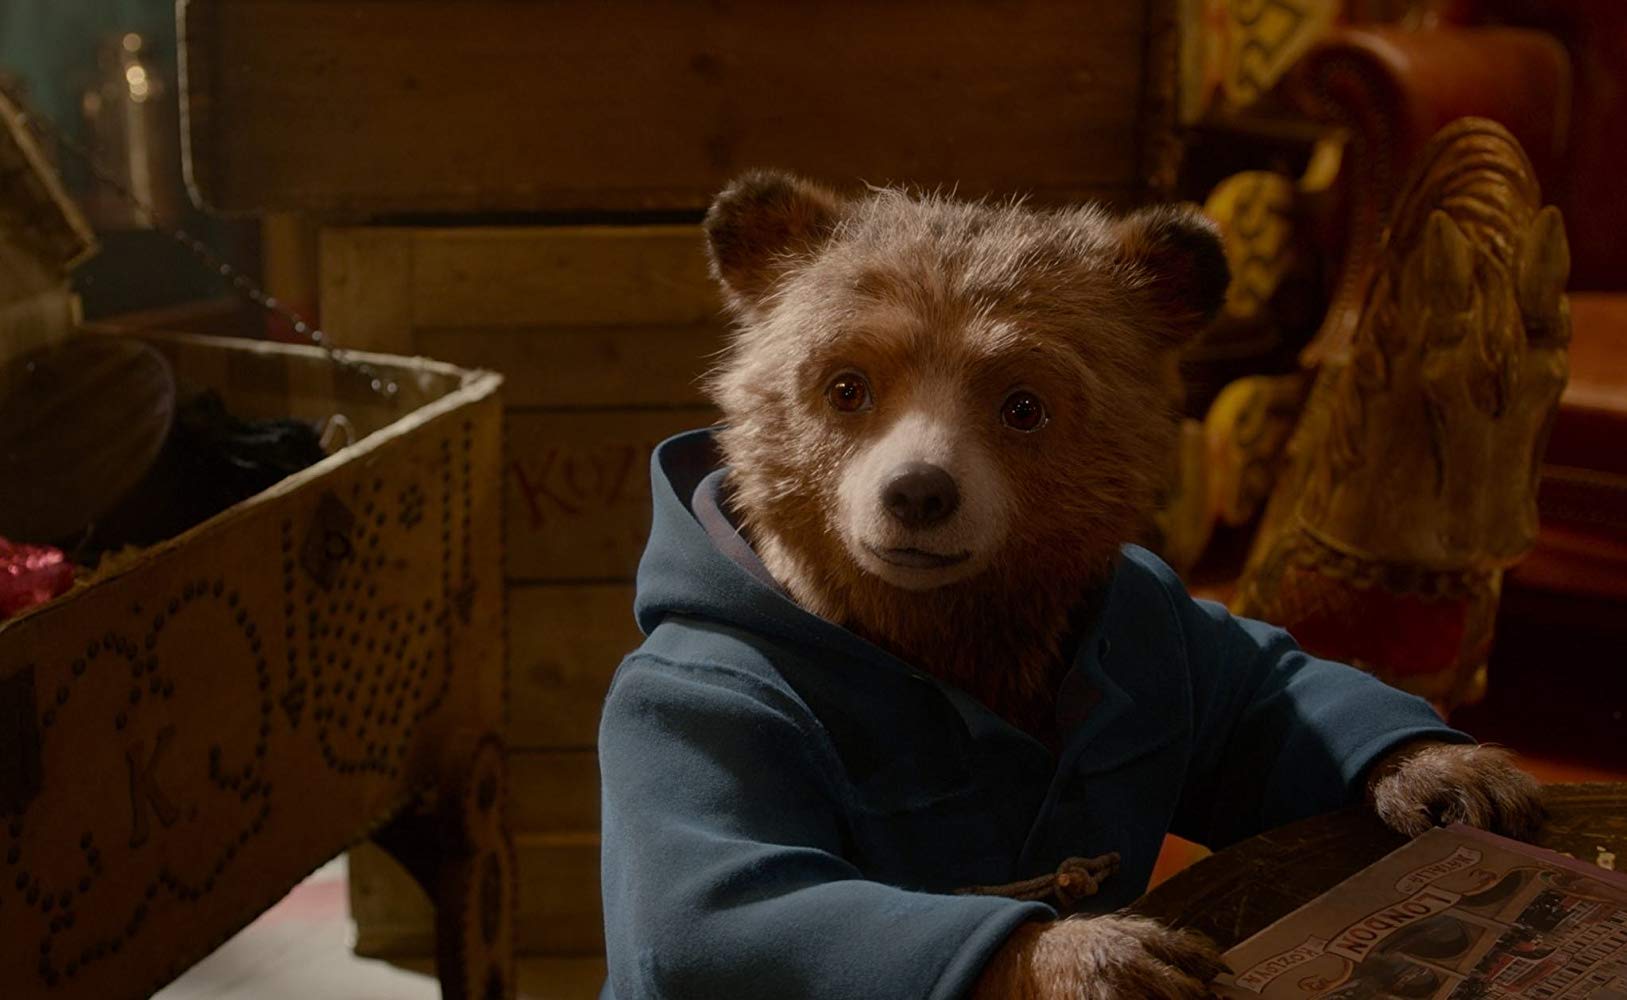 An animated Paddington Bear in a scene from the film "Paddington 2"